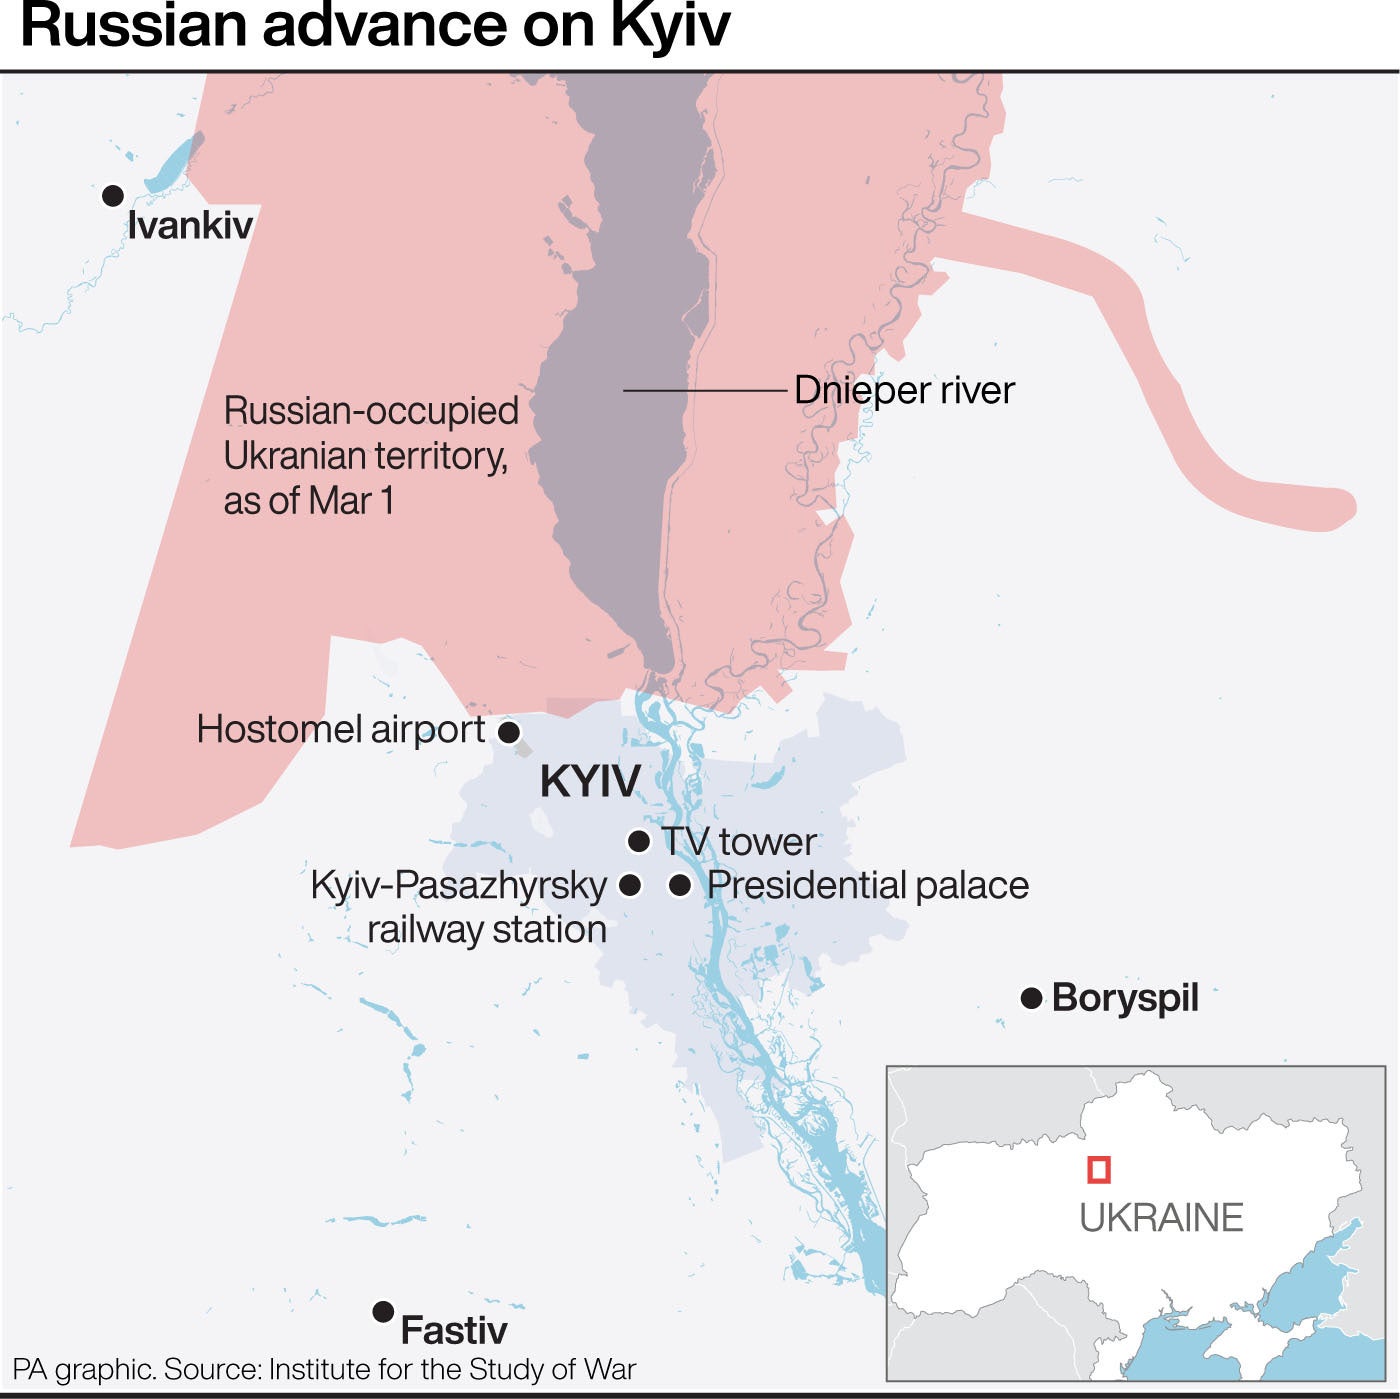 Russian advance on Kyiv (PA Graphics)